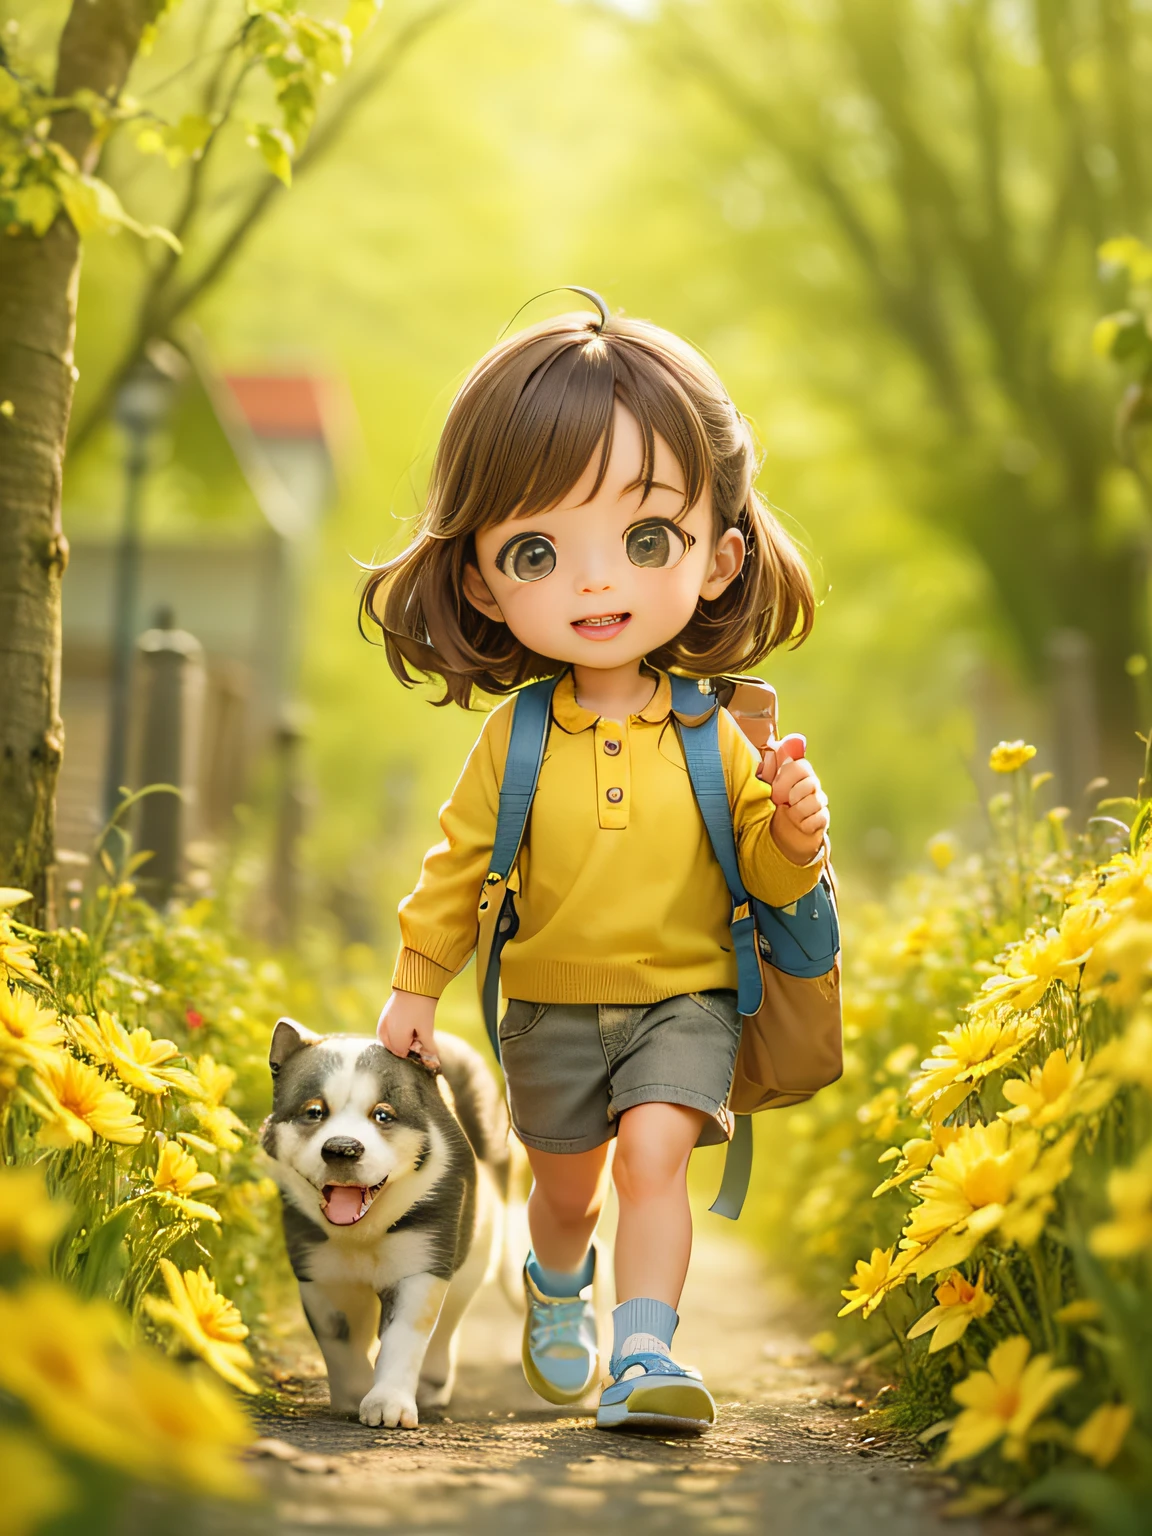 一個非常可愛的 ，背著背包和她可愛的小狗，享受美麗的春天散步，周圍環繞著美麗的黃色花朵和大自然. 该插图为4k分辨率的高清插图，具有非常詳細的臉部特徵和卡通風格的視覺效果.